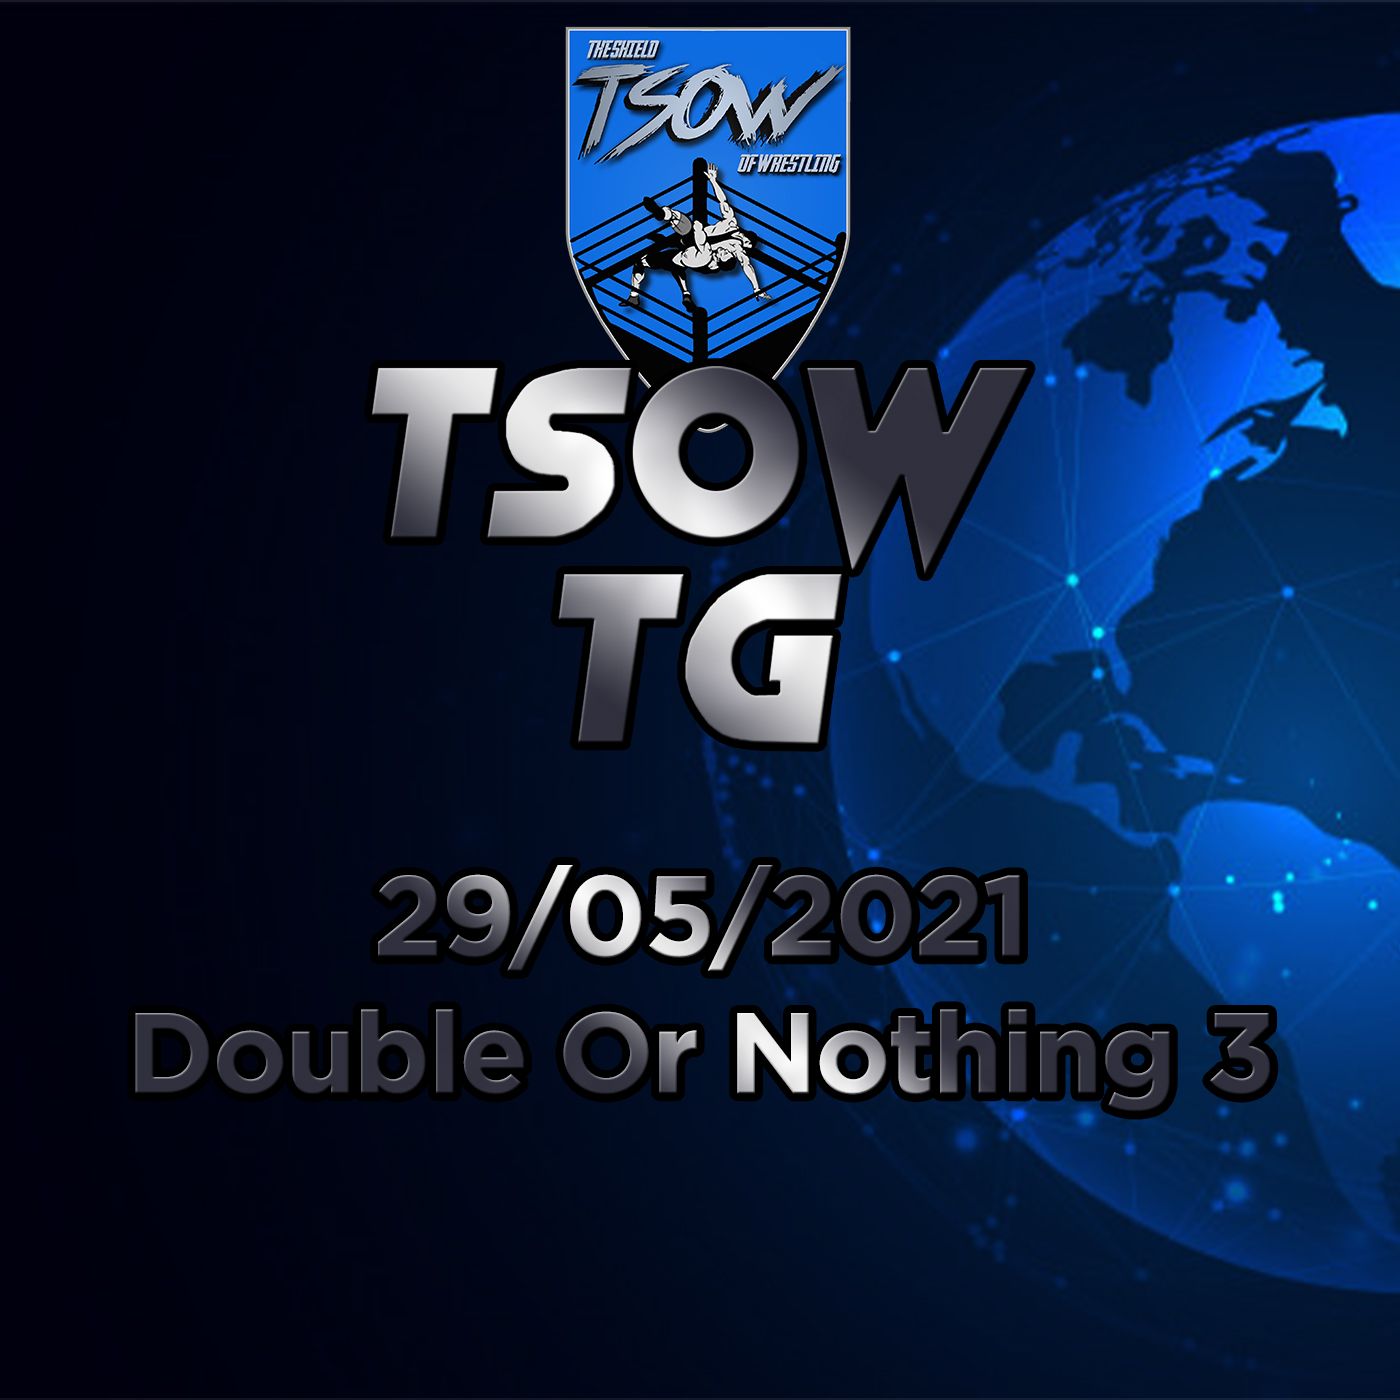 TSOW TG 29/05 - Double Or Nothing 3